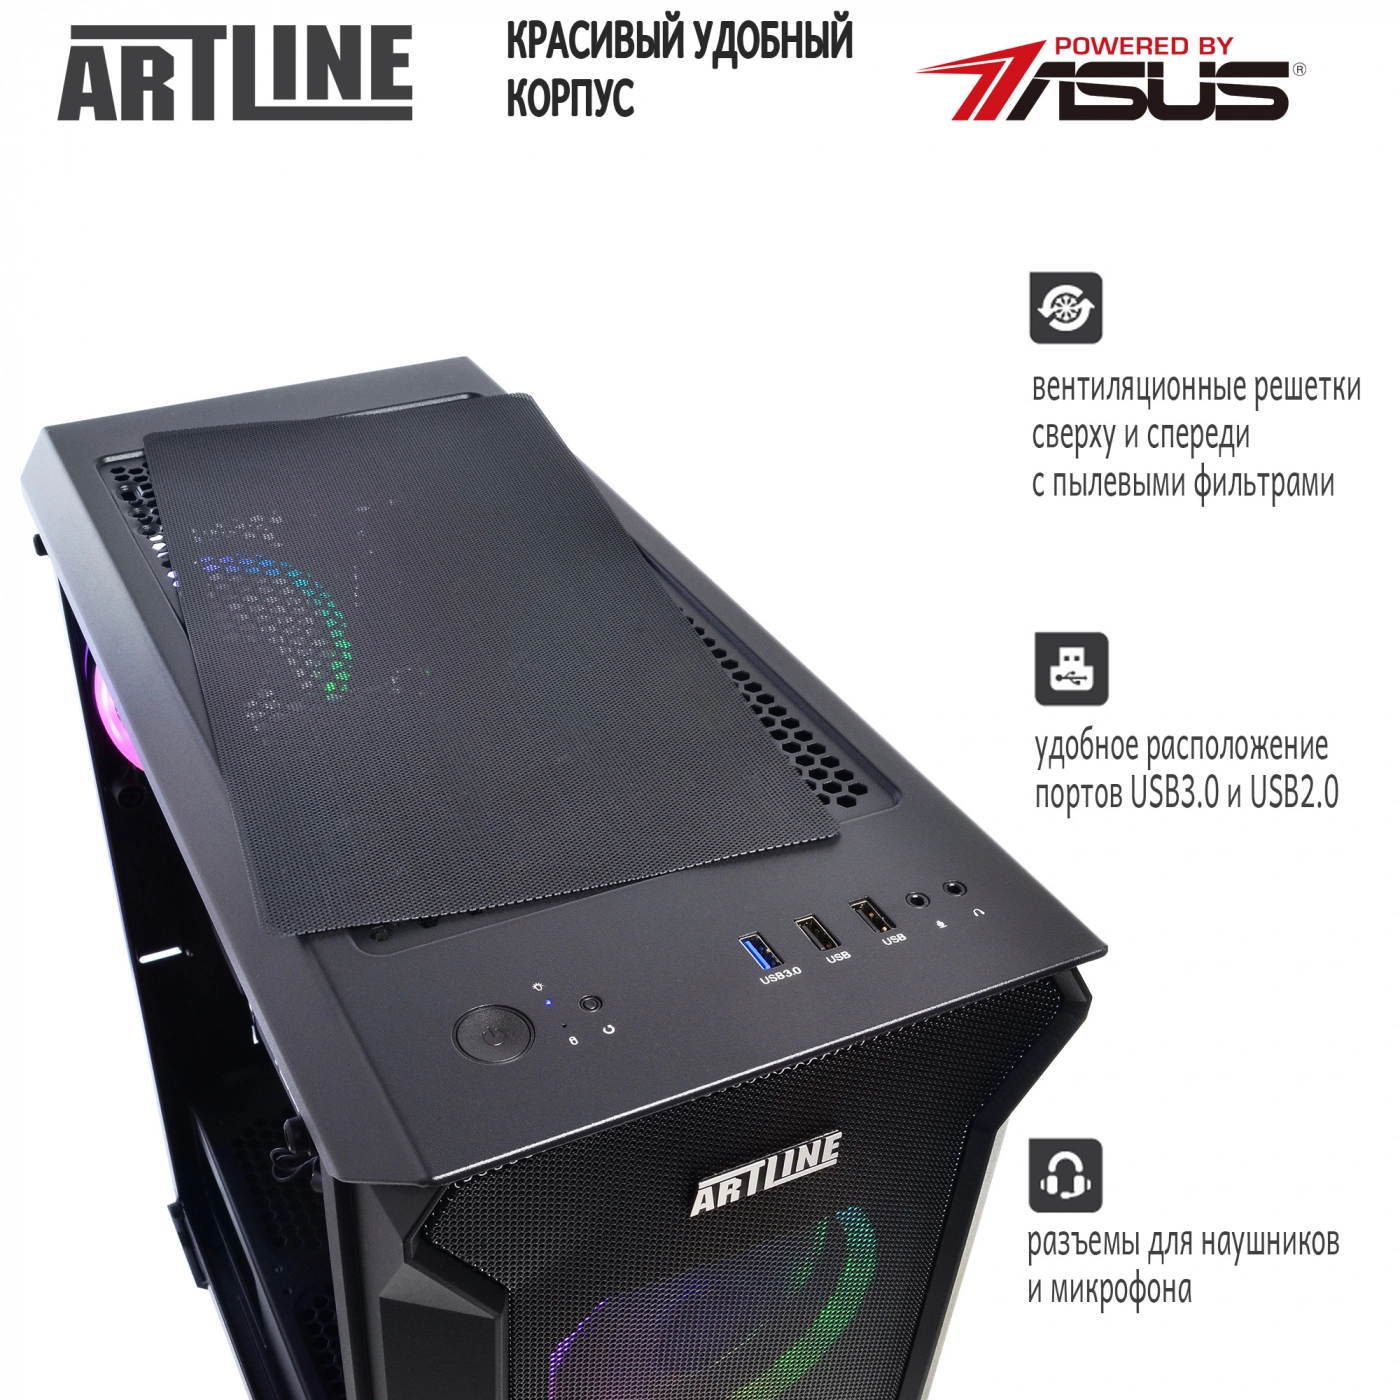 Купить Компьютер ARTLINE Gaming X66v12 - фото 5